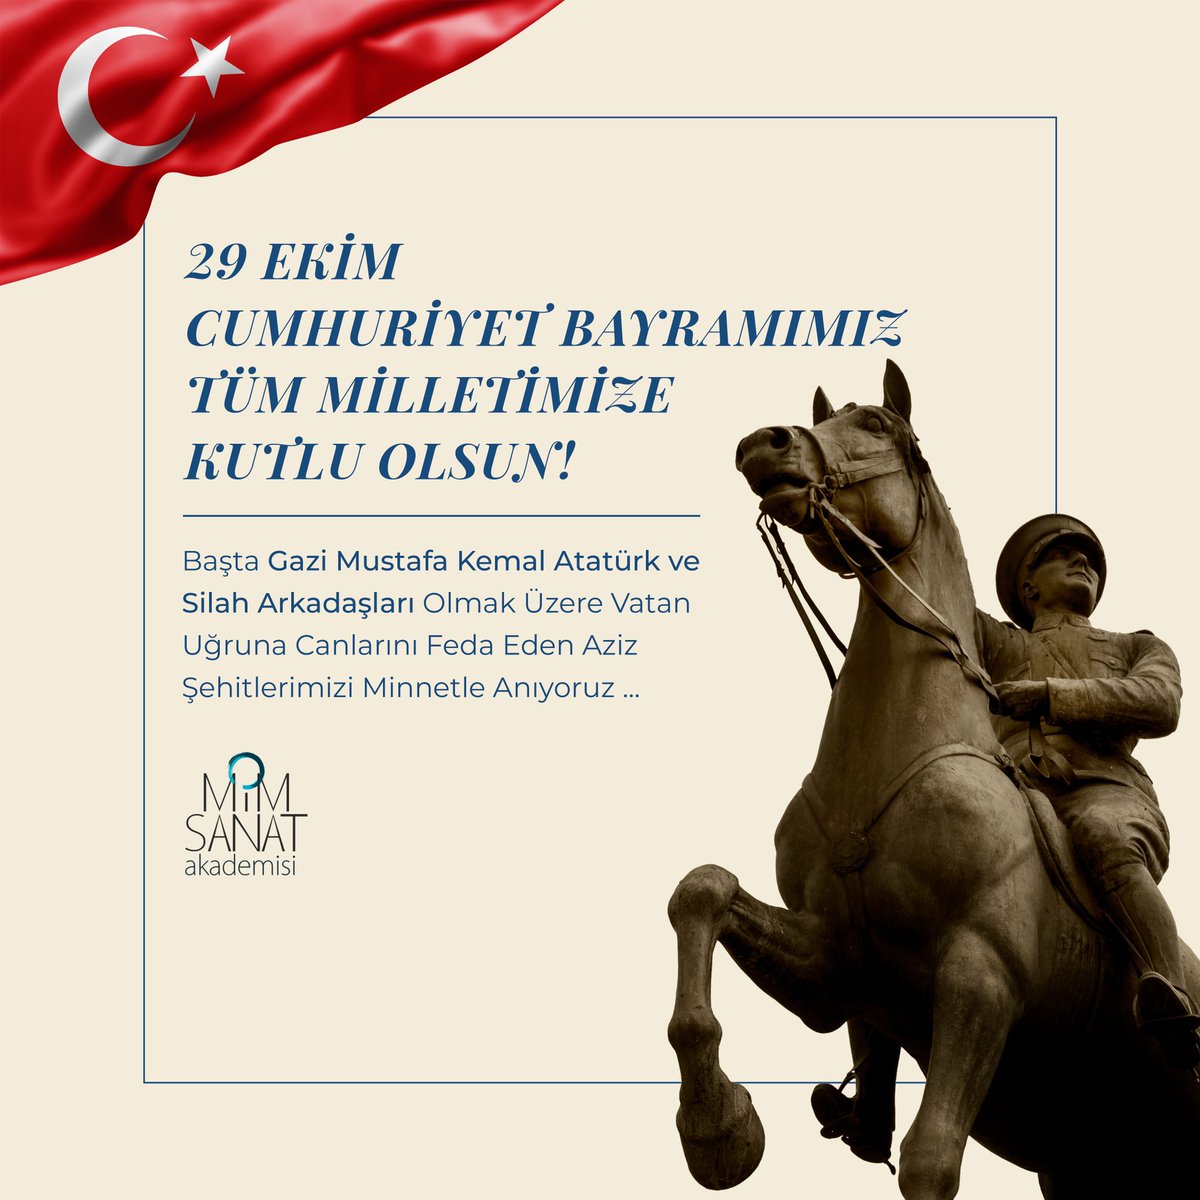 29 Ekim Cumhuriyet Bayramımız Tüm Milletimize Kutlu Olsun!🇹🇷
Başta Gazi Mustafa Kemal Atatürk ve Silah Arkadaşları Olmak Üzere Vatan Uğruna Canlarını Feda Eden Aziz Şehitlerimizi Minnetle Anıyoruz...

#mimsanatakademisi #29EkimCumhuriyetBayramı